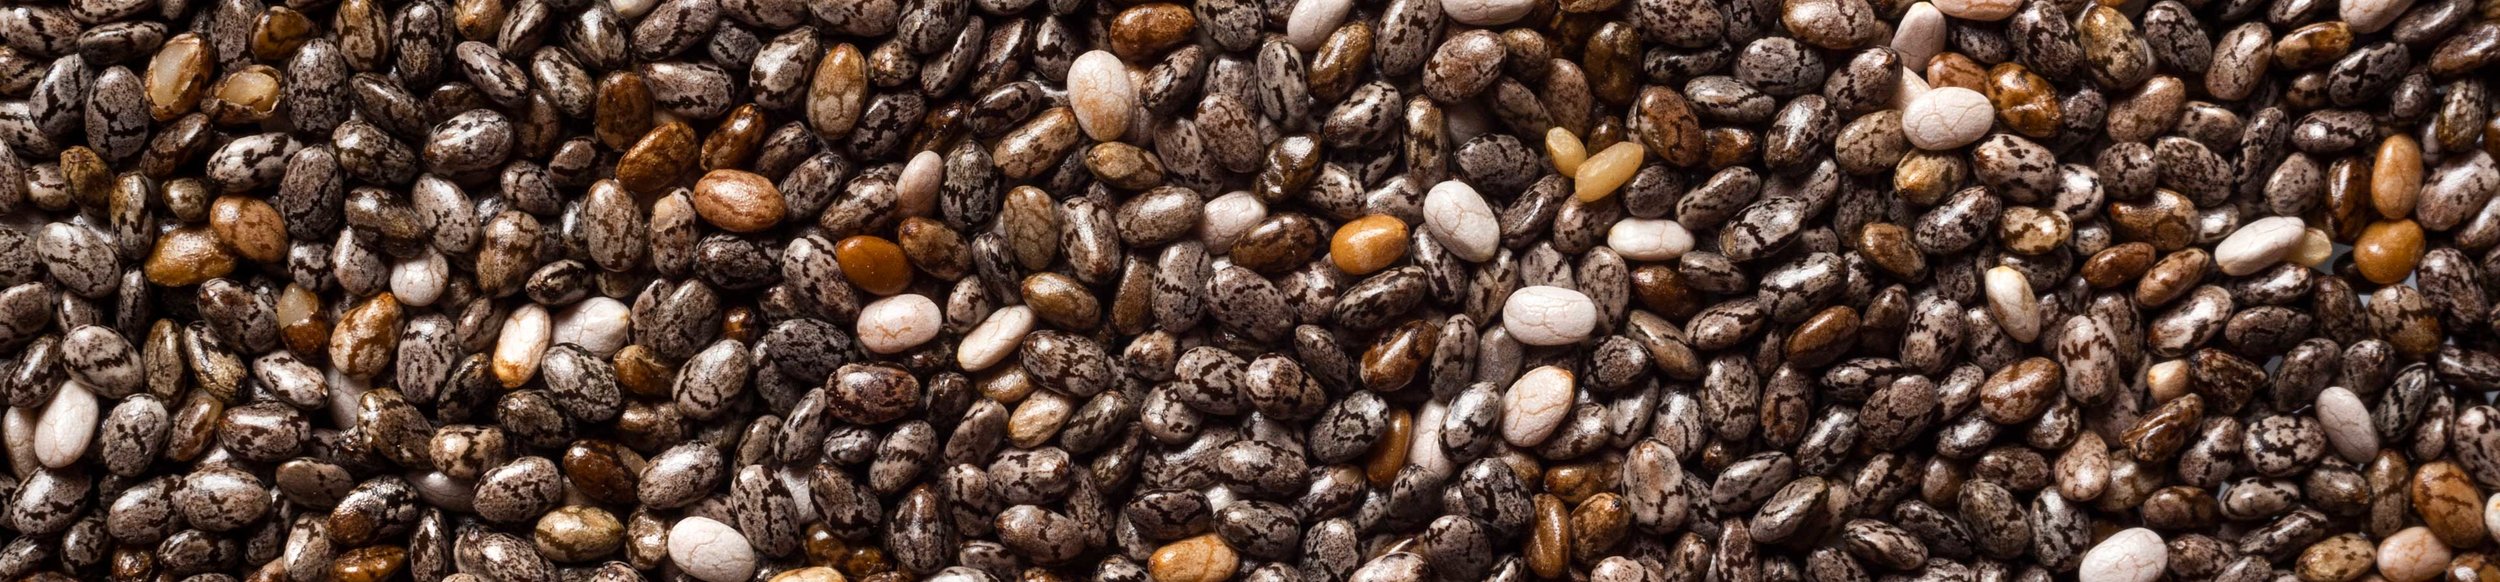 Las semillas de chía son pequeñas, de forma ovalada y, si bien pueden variar en color desde negro, gris o entre manchado de negro y gris, sus valores nutricionales son muy similares.